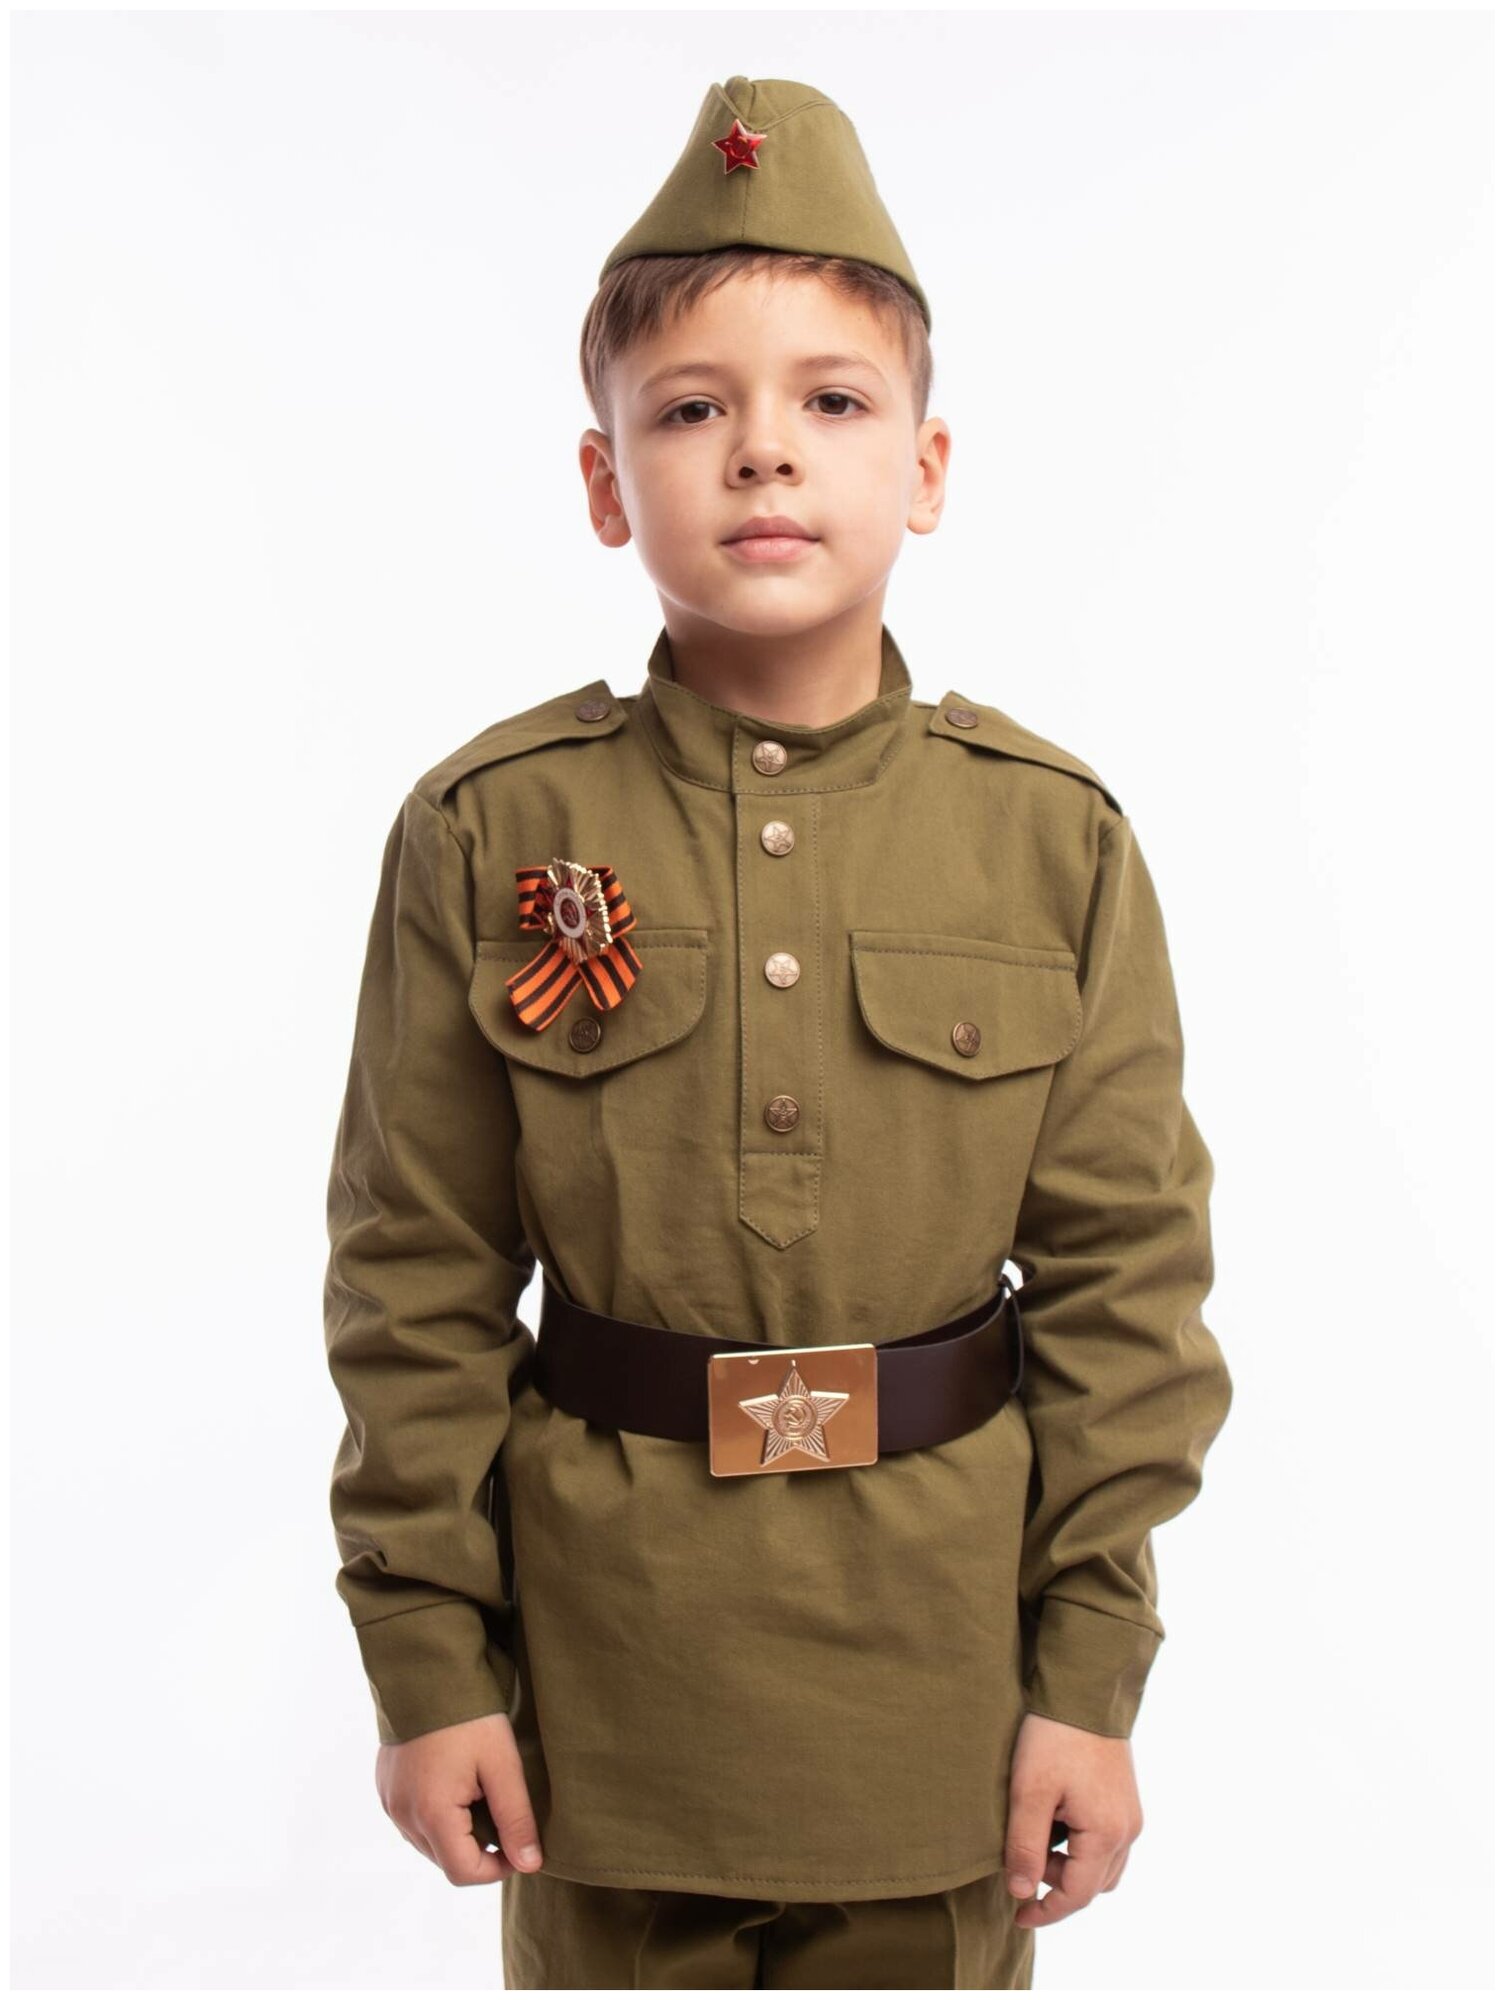 Костюм Солдат хлопок (2130 к-21), размер 128, цвет мультиколор, бренд Пуговка